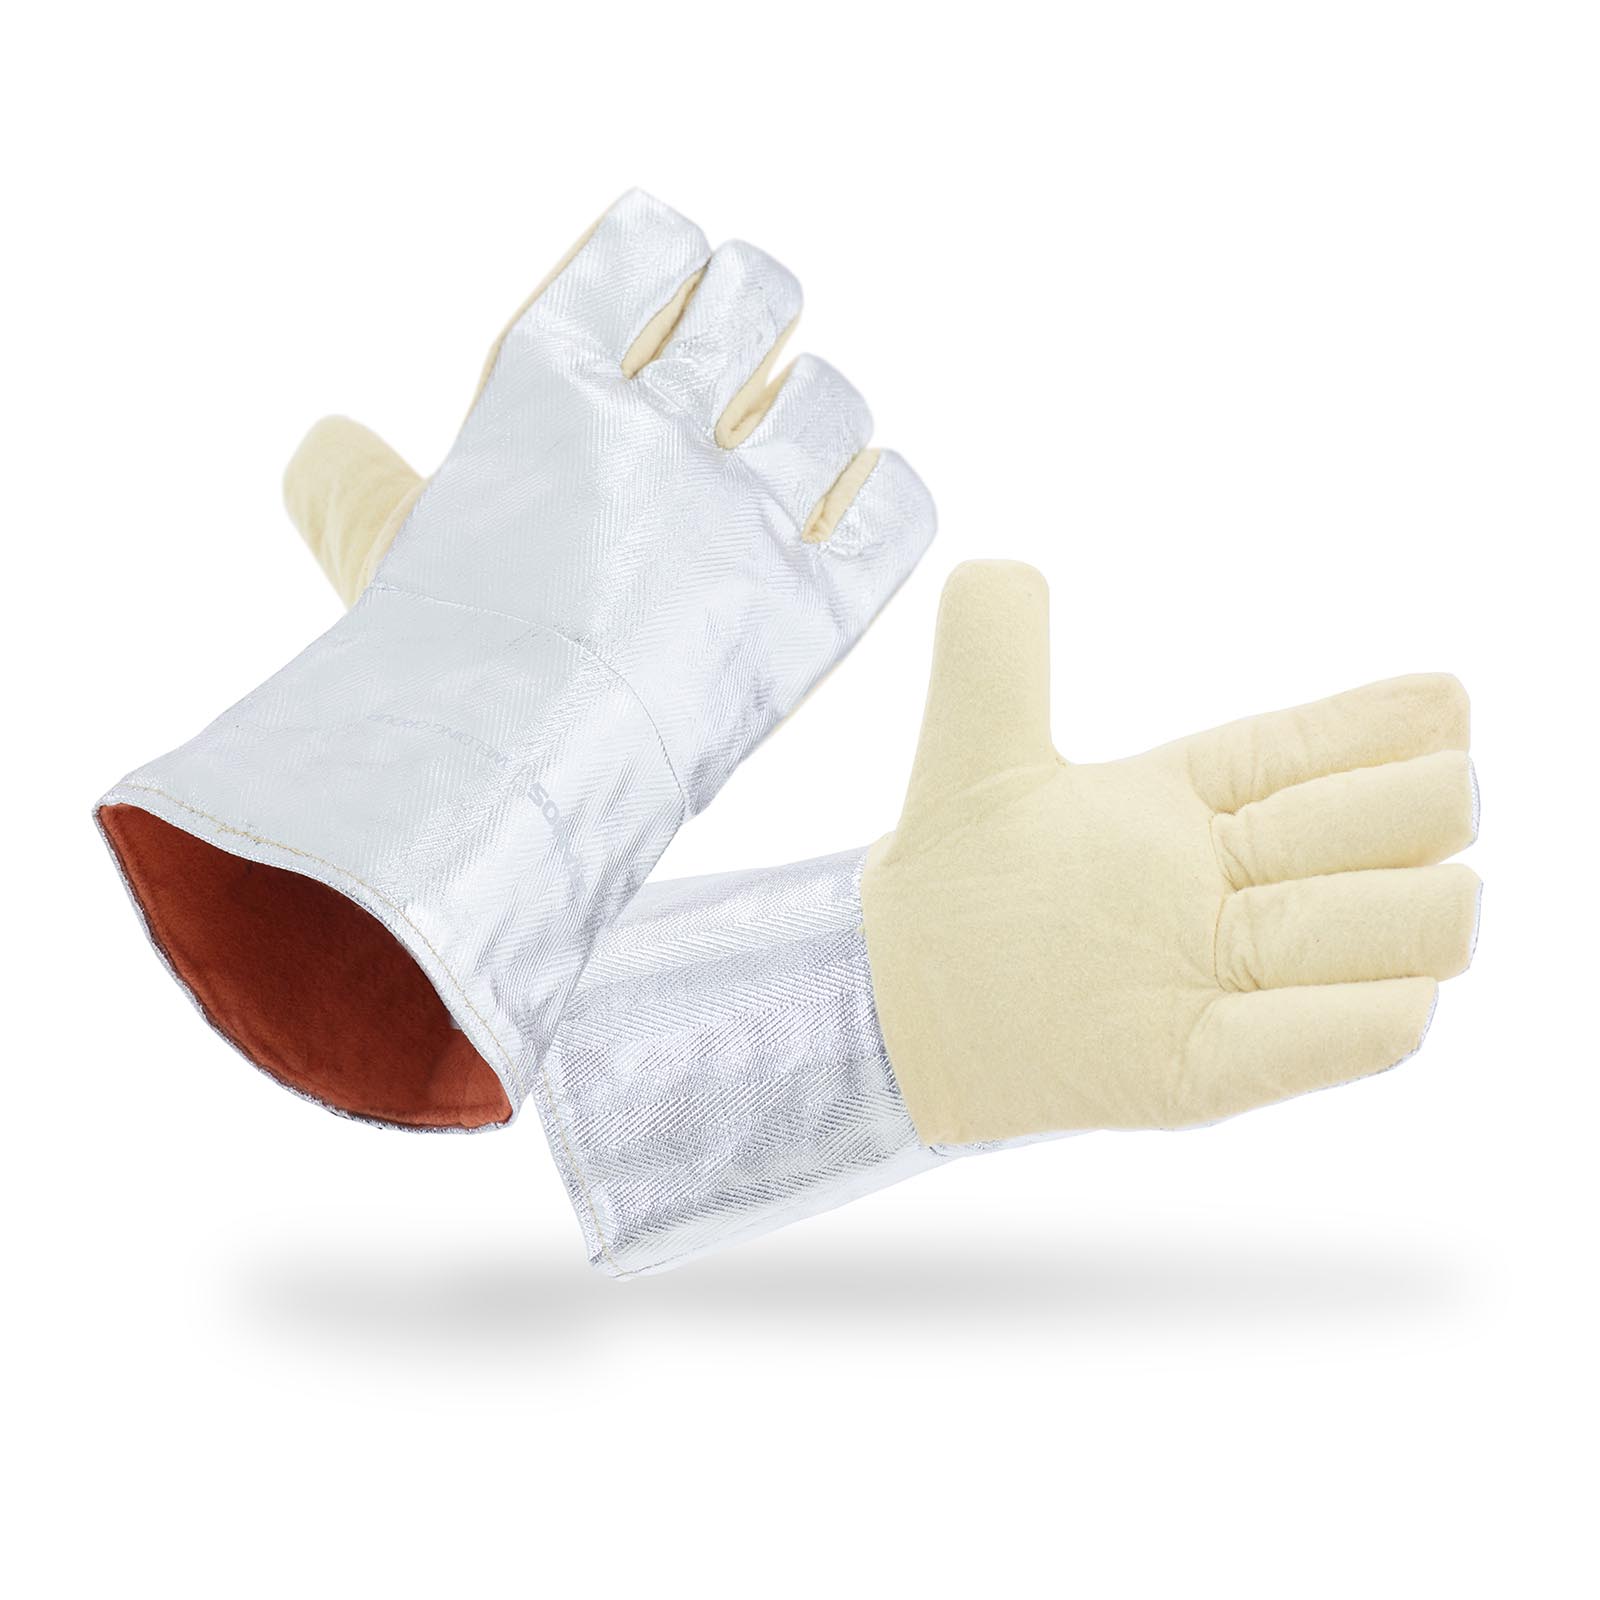 Varilske rokavice - 35 x 20 cm - aramidna vlakna - dolžine 35 cm